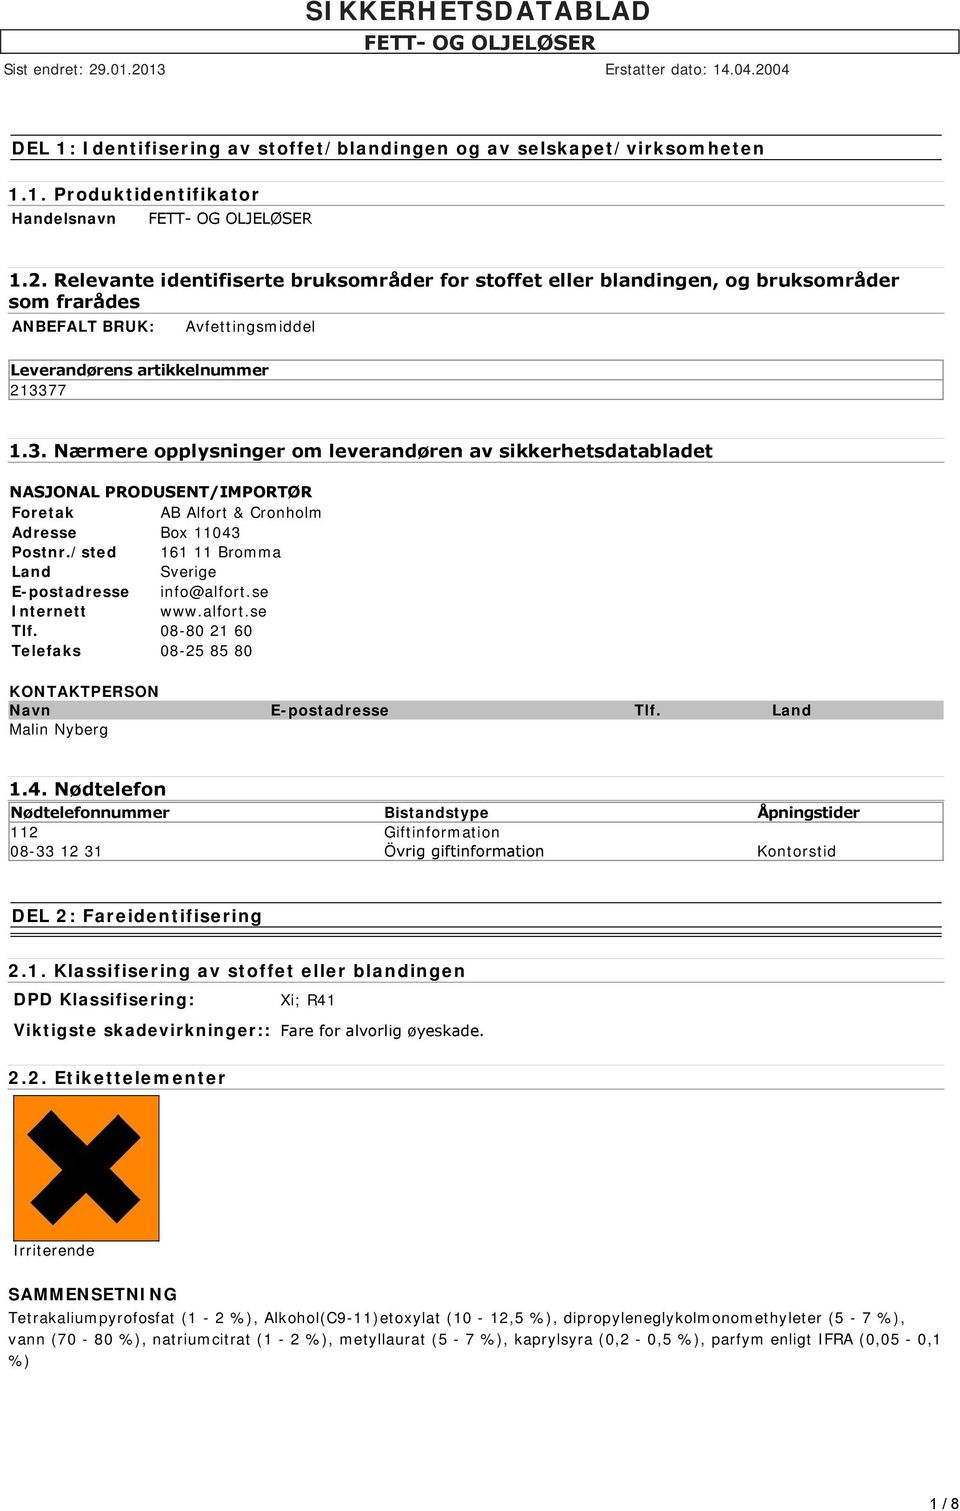 77 1.3. Nærmere opplysninger om leverandøren av sikkerhetsdatabladet NASJONAL PRODUSENT/IMPORTØR Foretak AB Alfort & Cronholm Adresse Box 11043 Postnr.